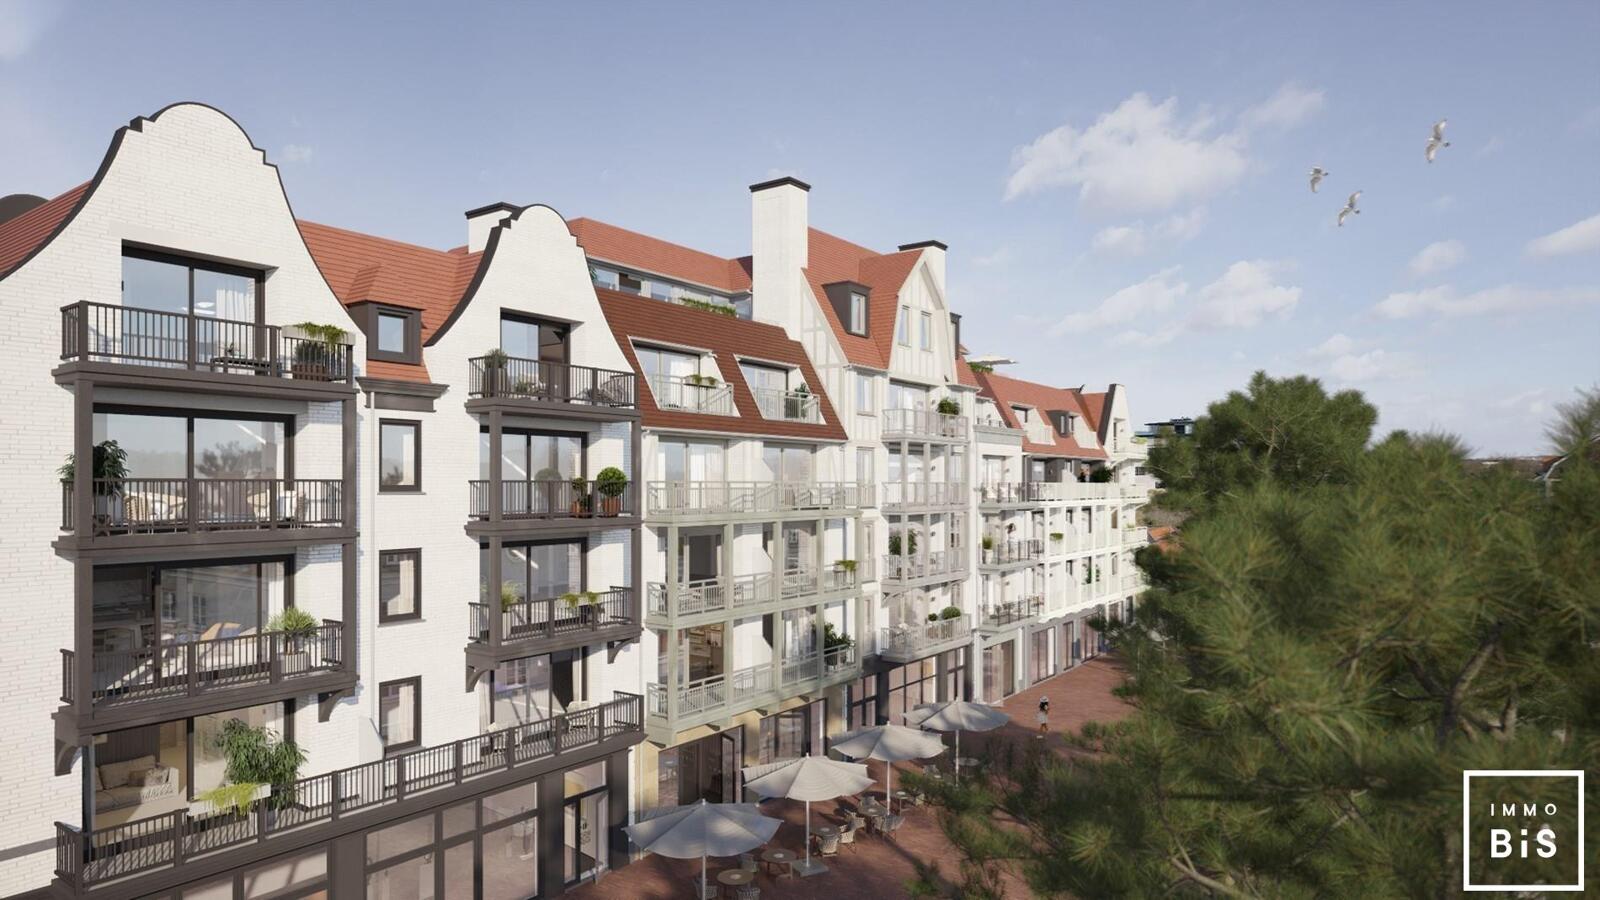 " Appartement villa moderne avec terrasse sur la Digue à Cadzand - Résidence Duinhof-Noord " 4